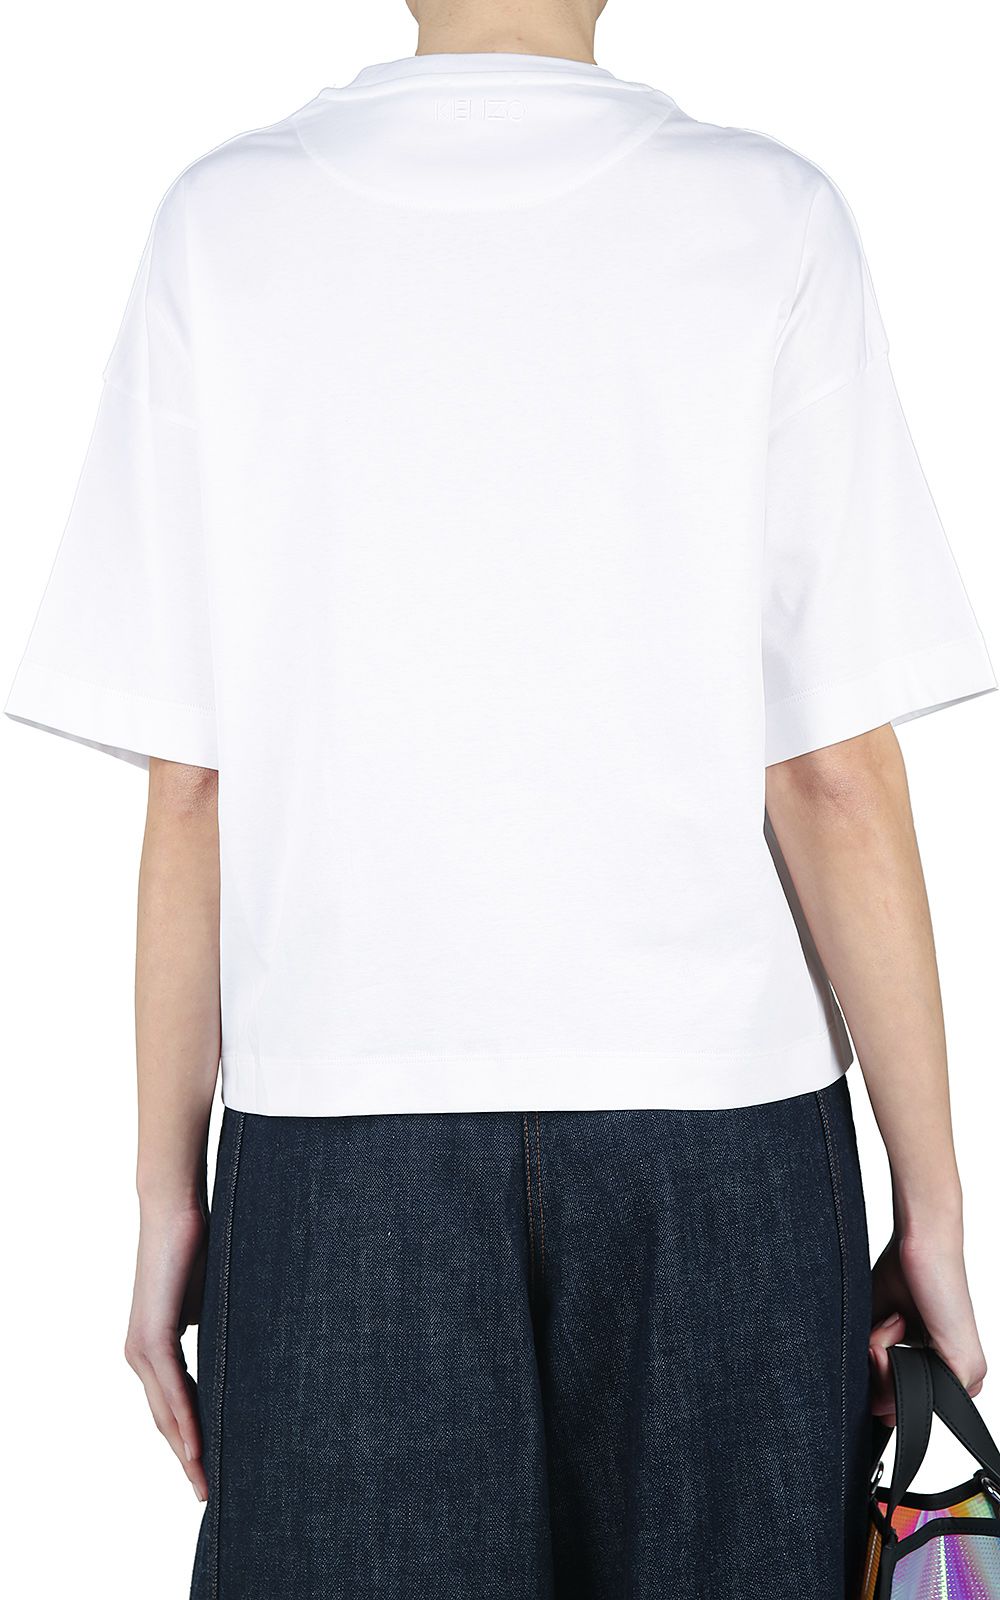 Kenzo - Kenzo Cinched Oversized Cotton T-shirt - Bianco, Women's Short ...